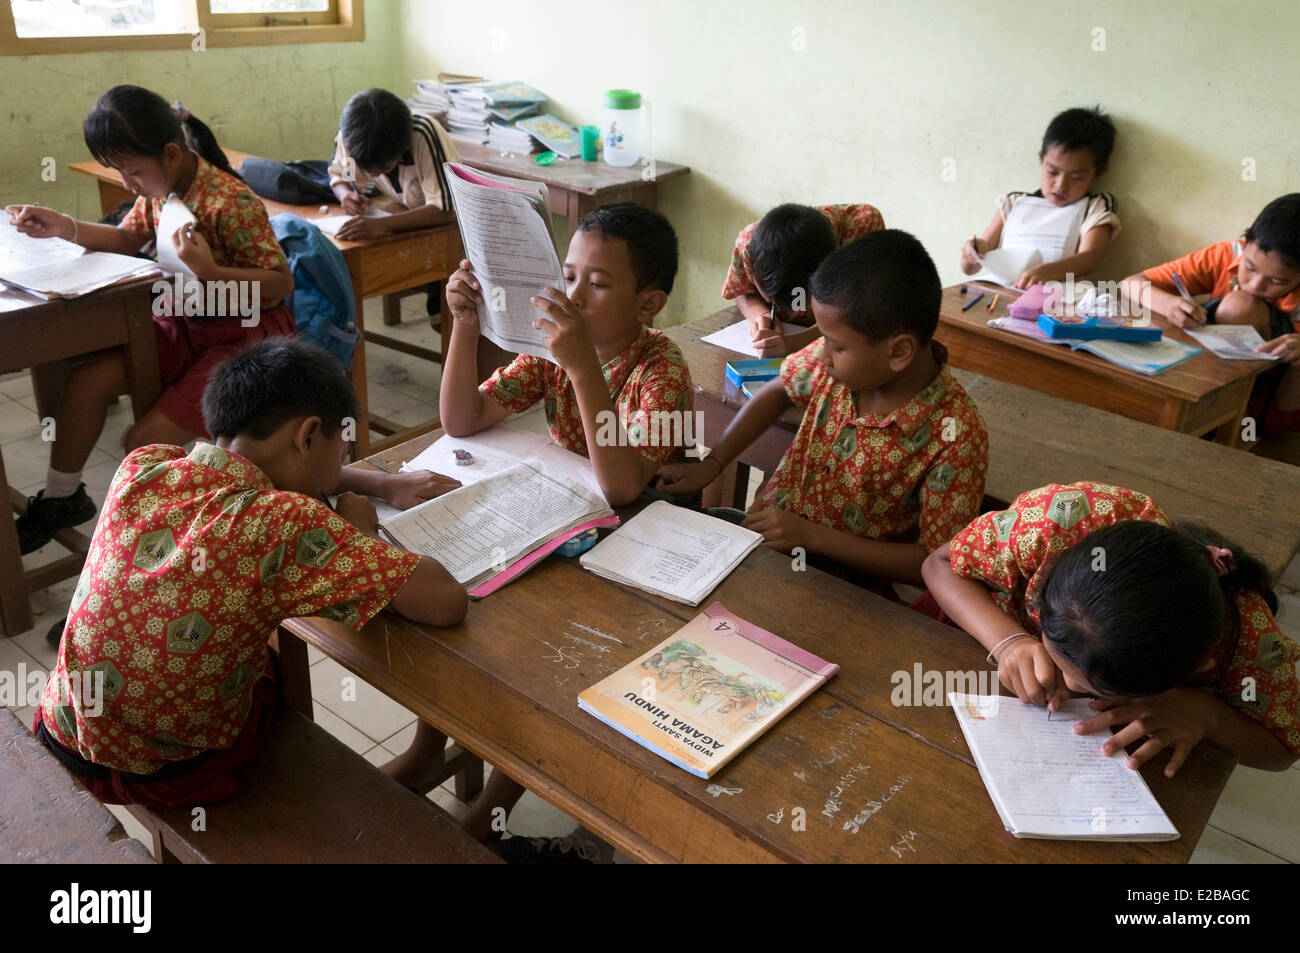 L'INDONÉSIE, Bali, Tabanan, Taman Sari Buwana Tunjuk, village traditionnel, au sein d'une école, les enfants apprennent à lire et à écrire Banque D'Images